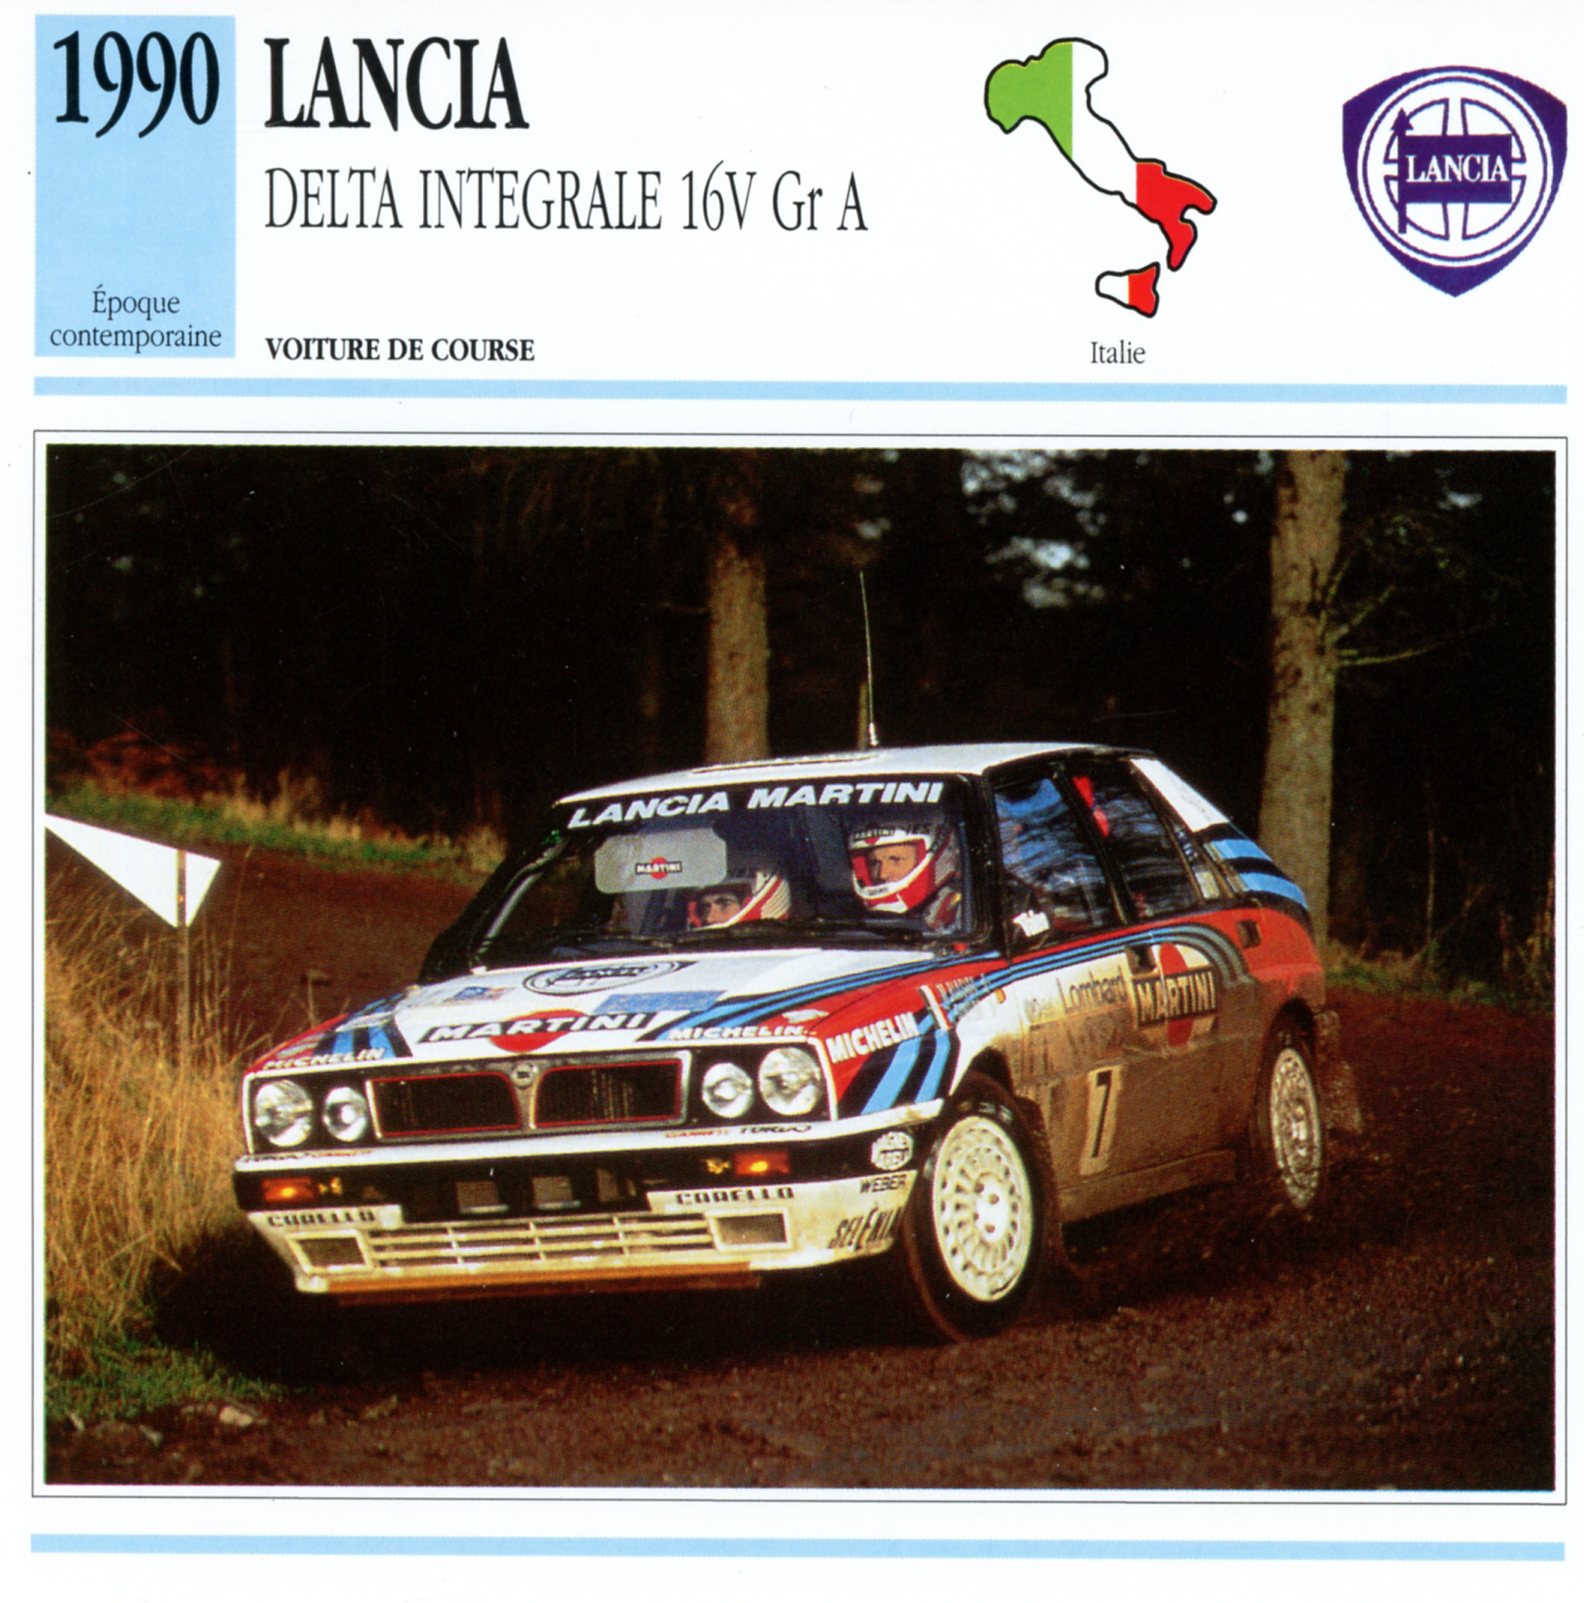 LANCIA DELTA INTEGRALE 16V GR.A 1990 - FICHE AUTO CARACTÉRISTIQUES